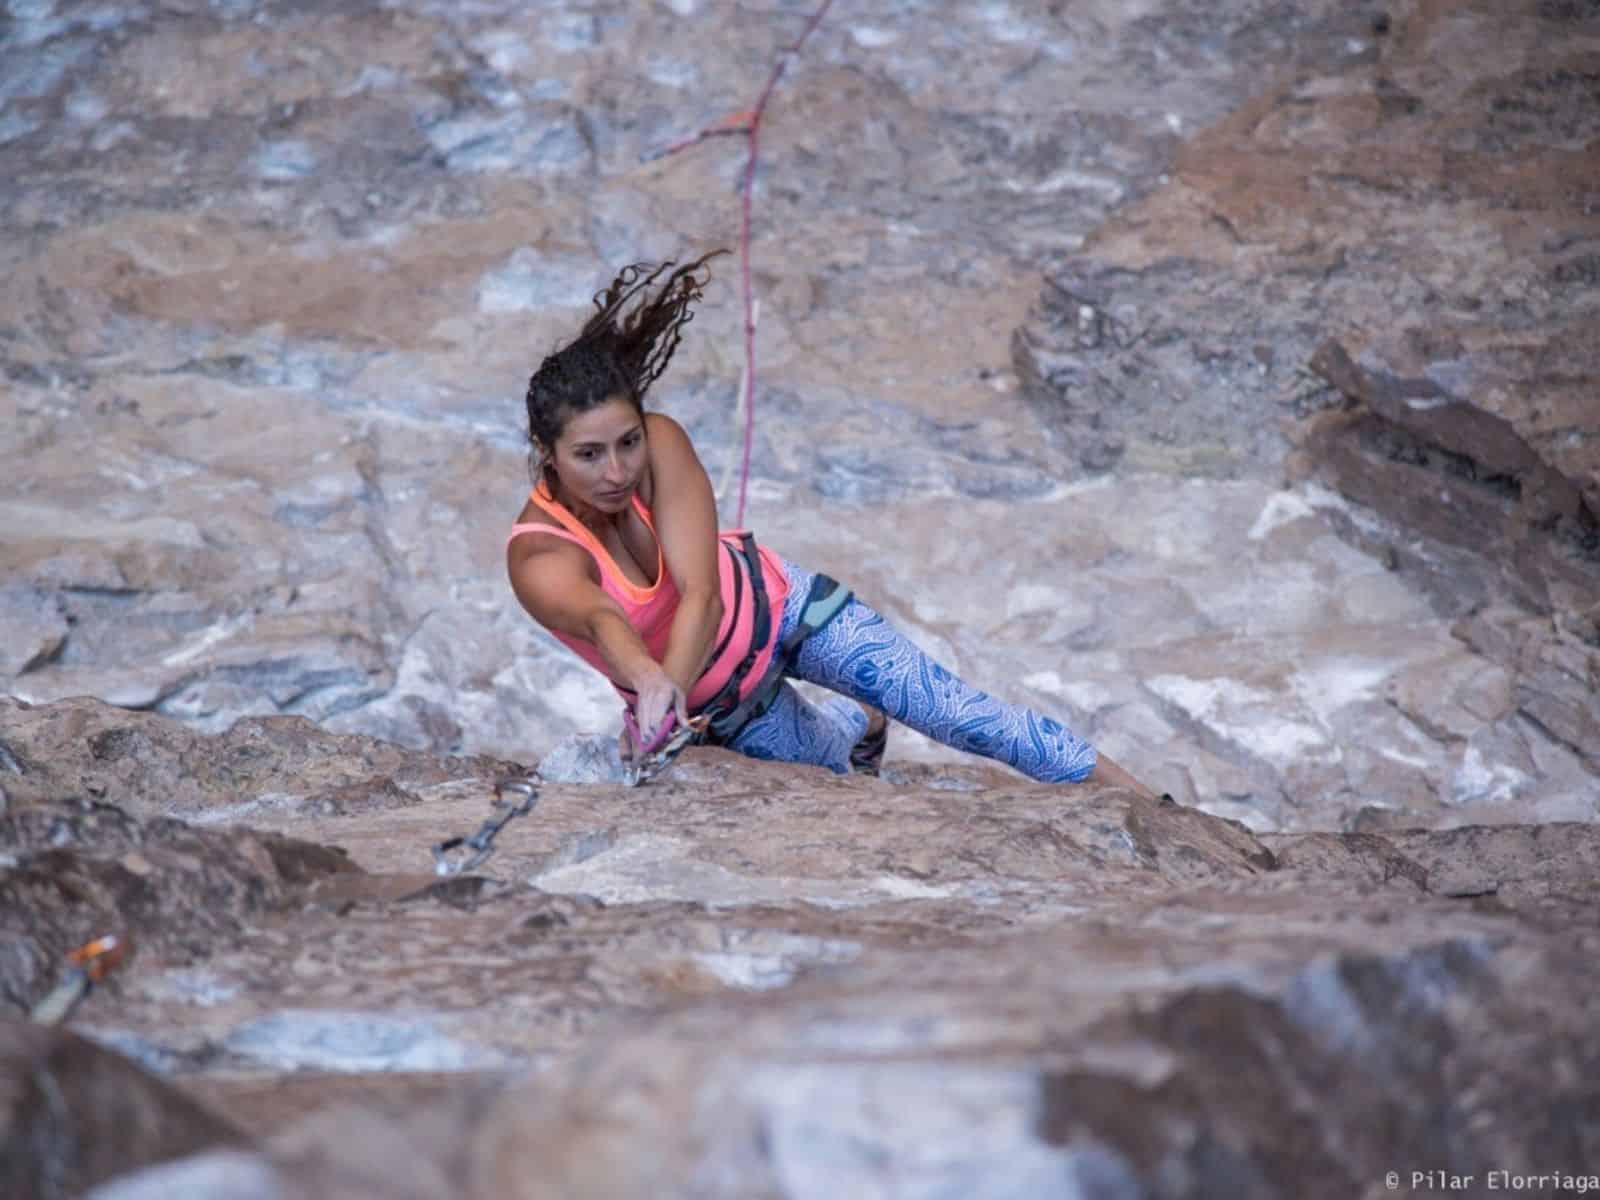 Una mujer está escalando rocas mientras usa un arnés.